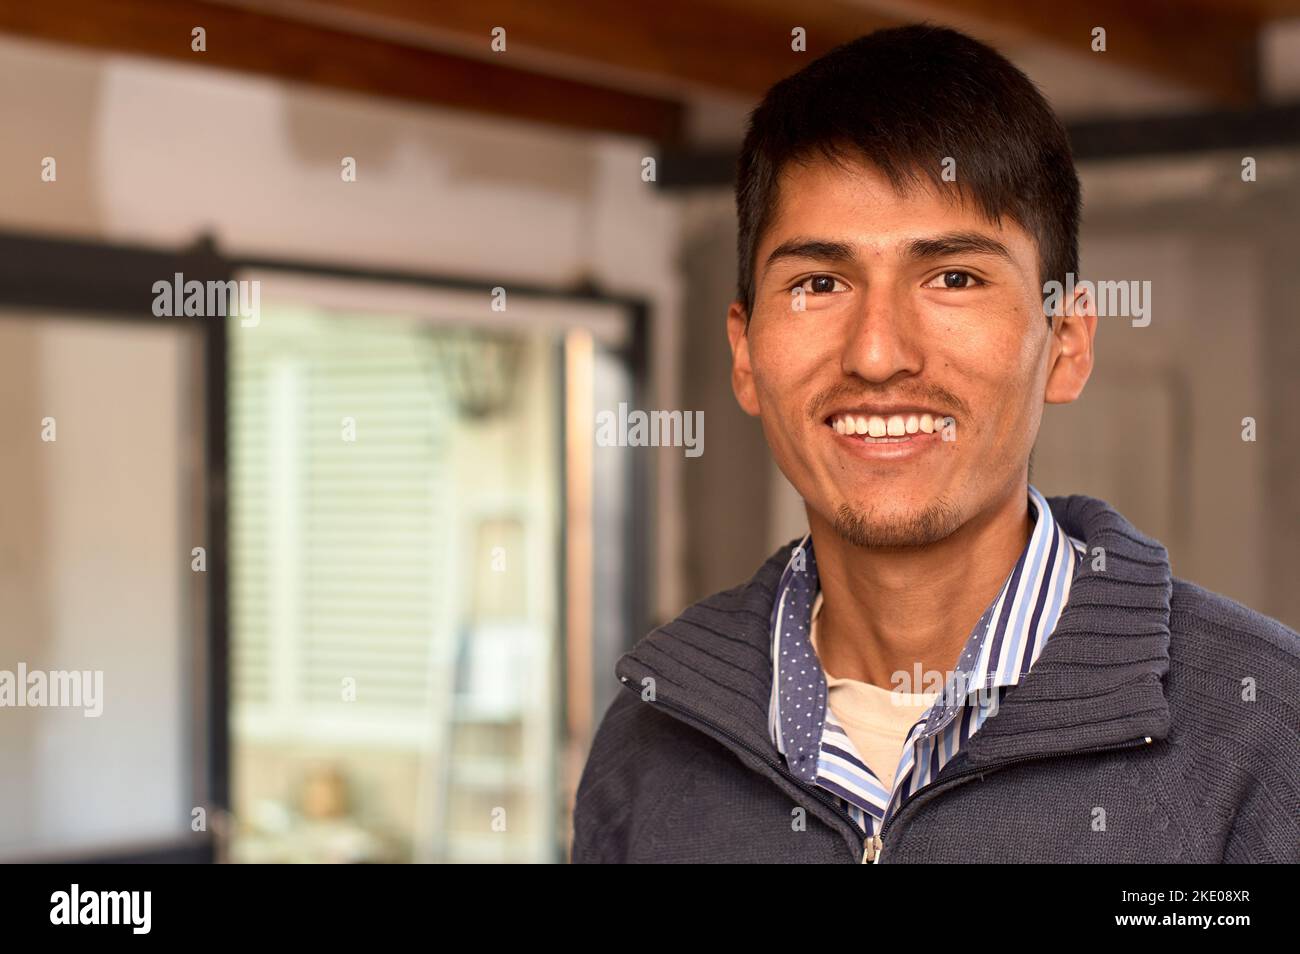 Portrait d'un homme travailleur et honnête Banque D'Images